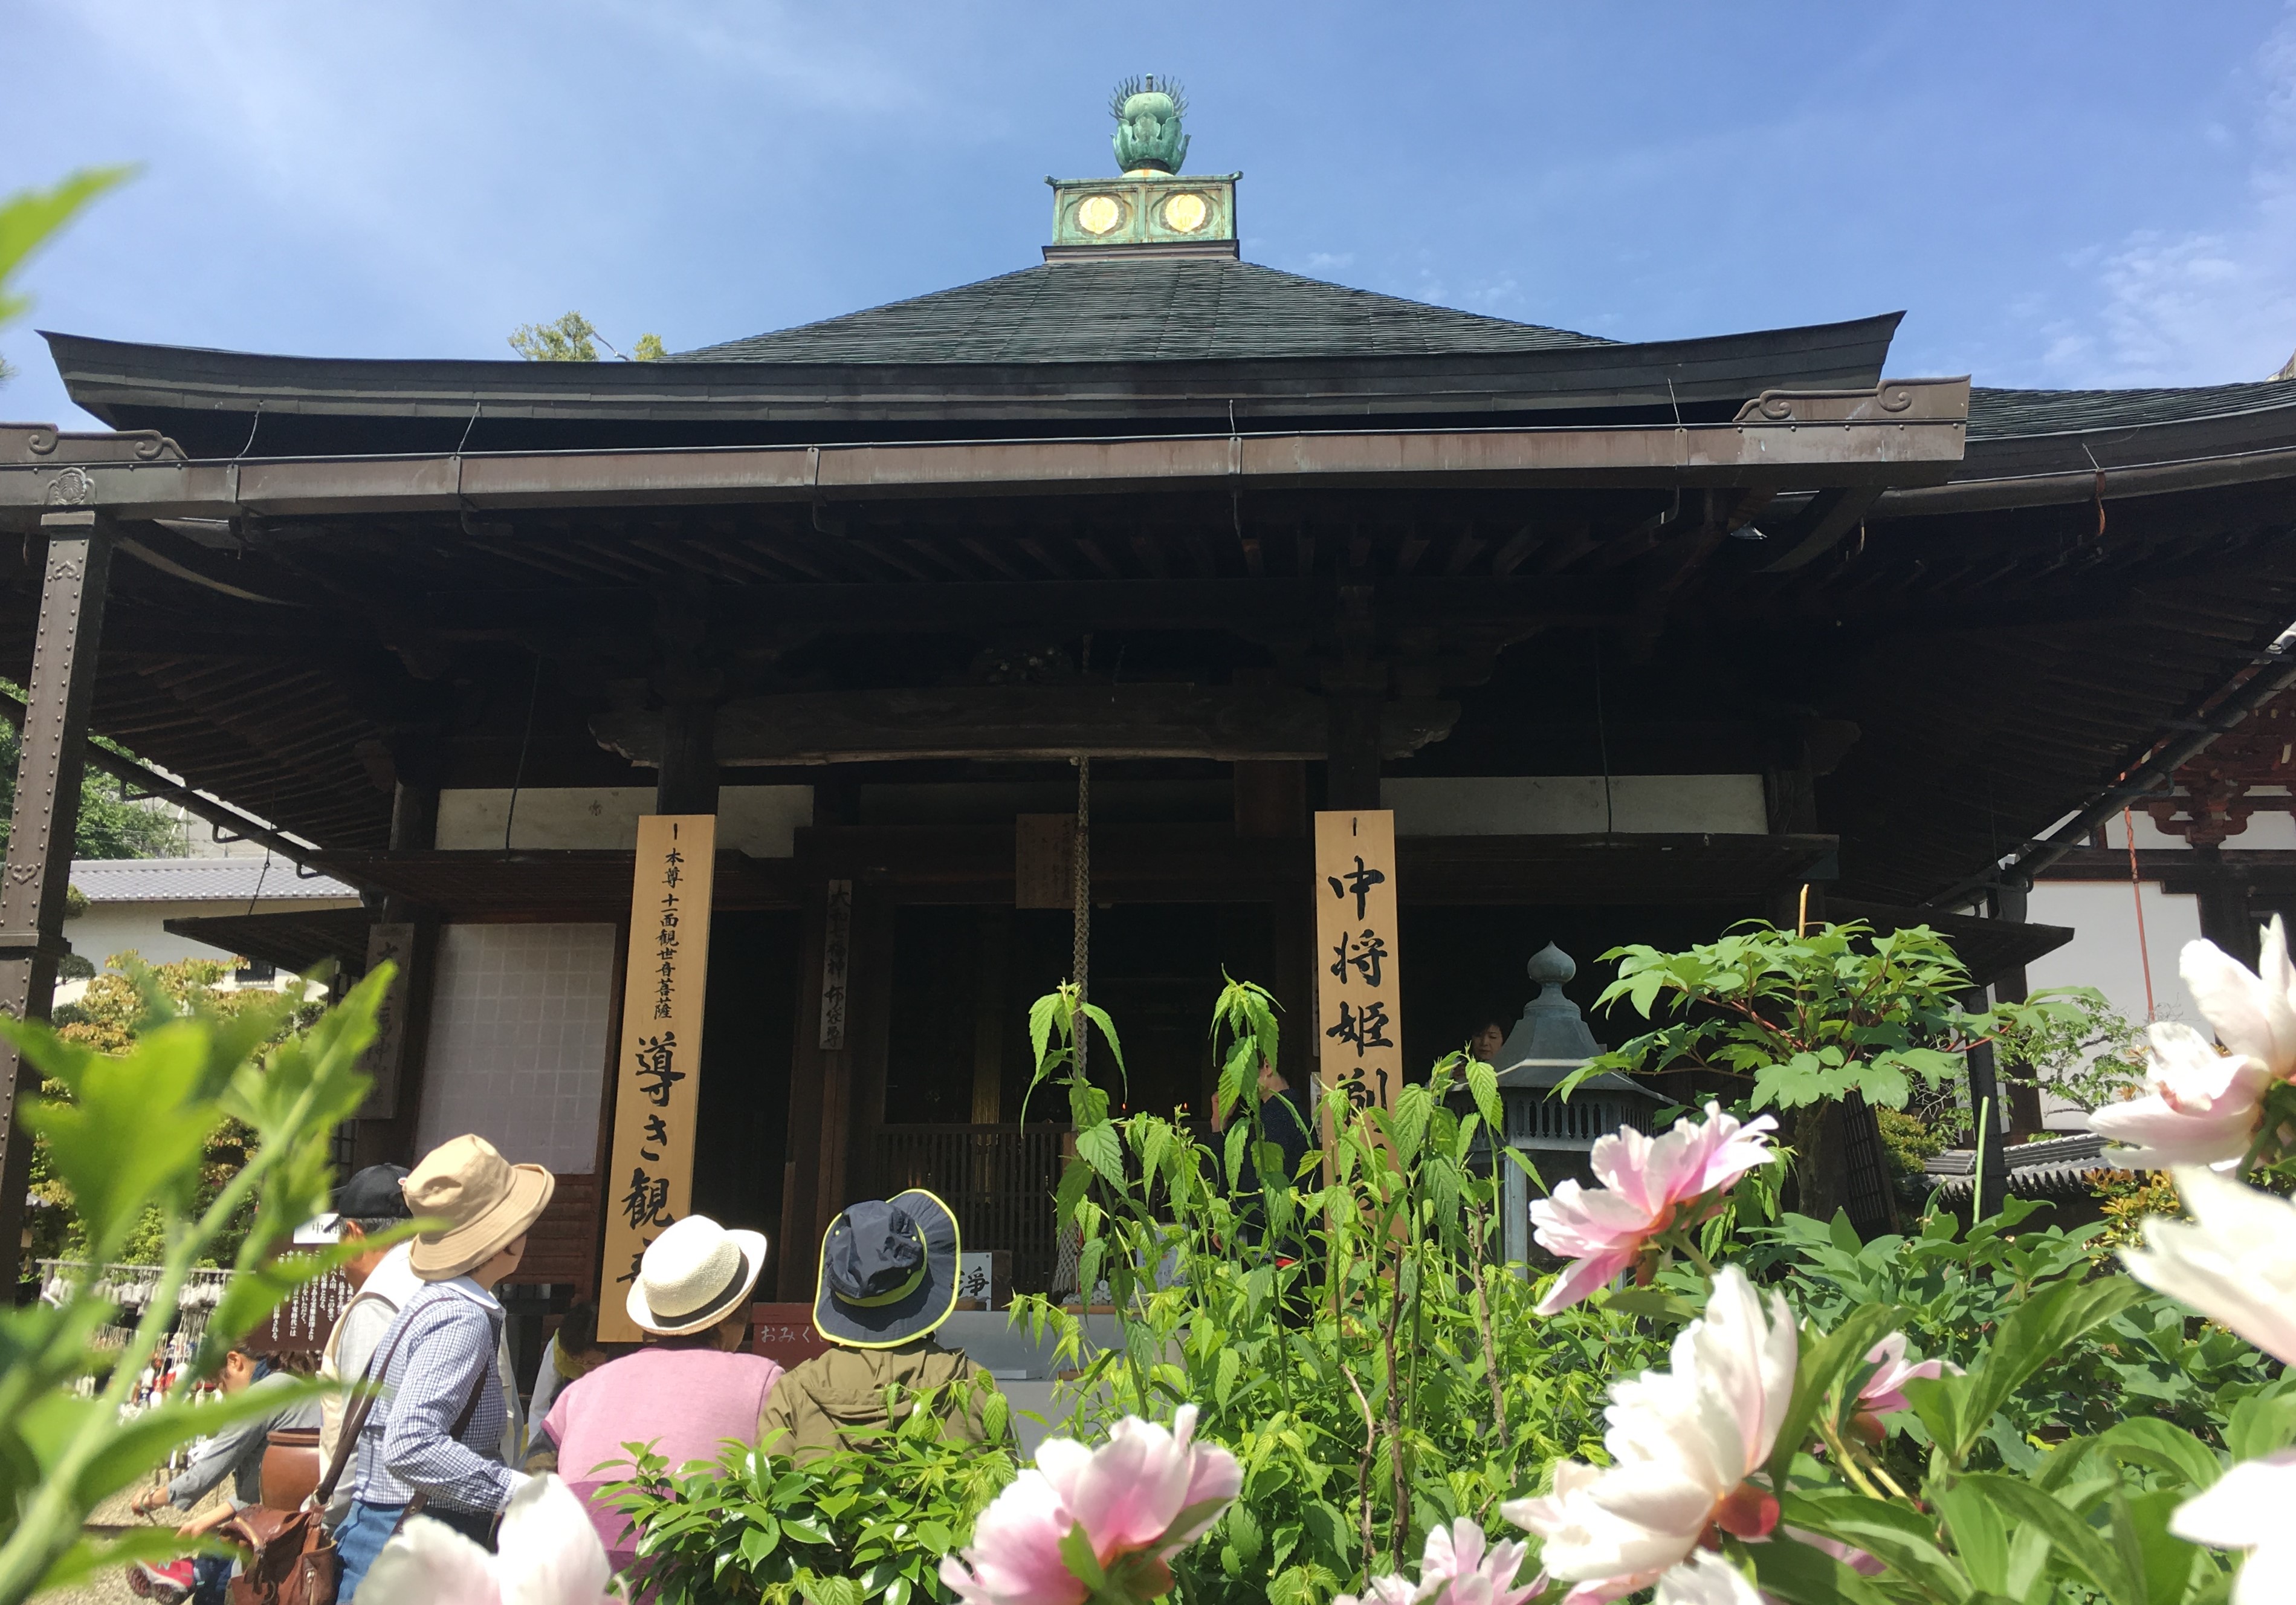 Mihatsu-do at the Nakano-bo with blooming flowers